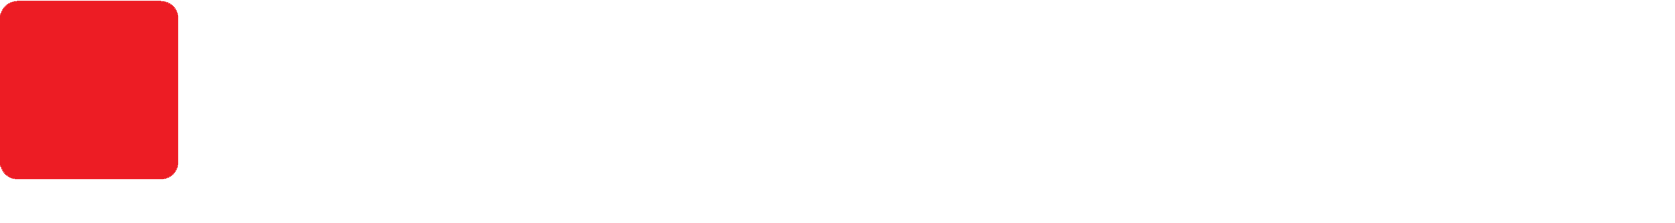 logo_san_german (1).png